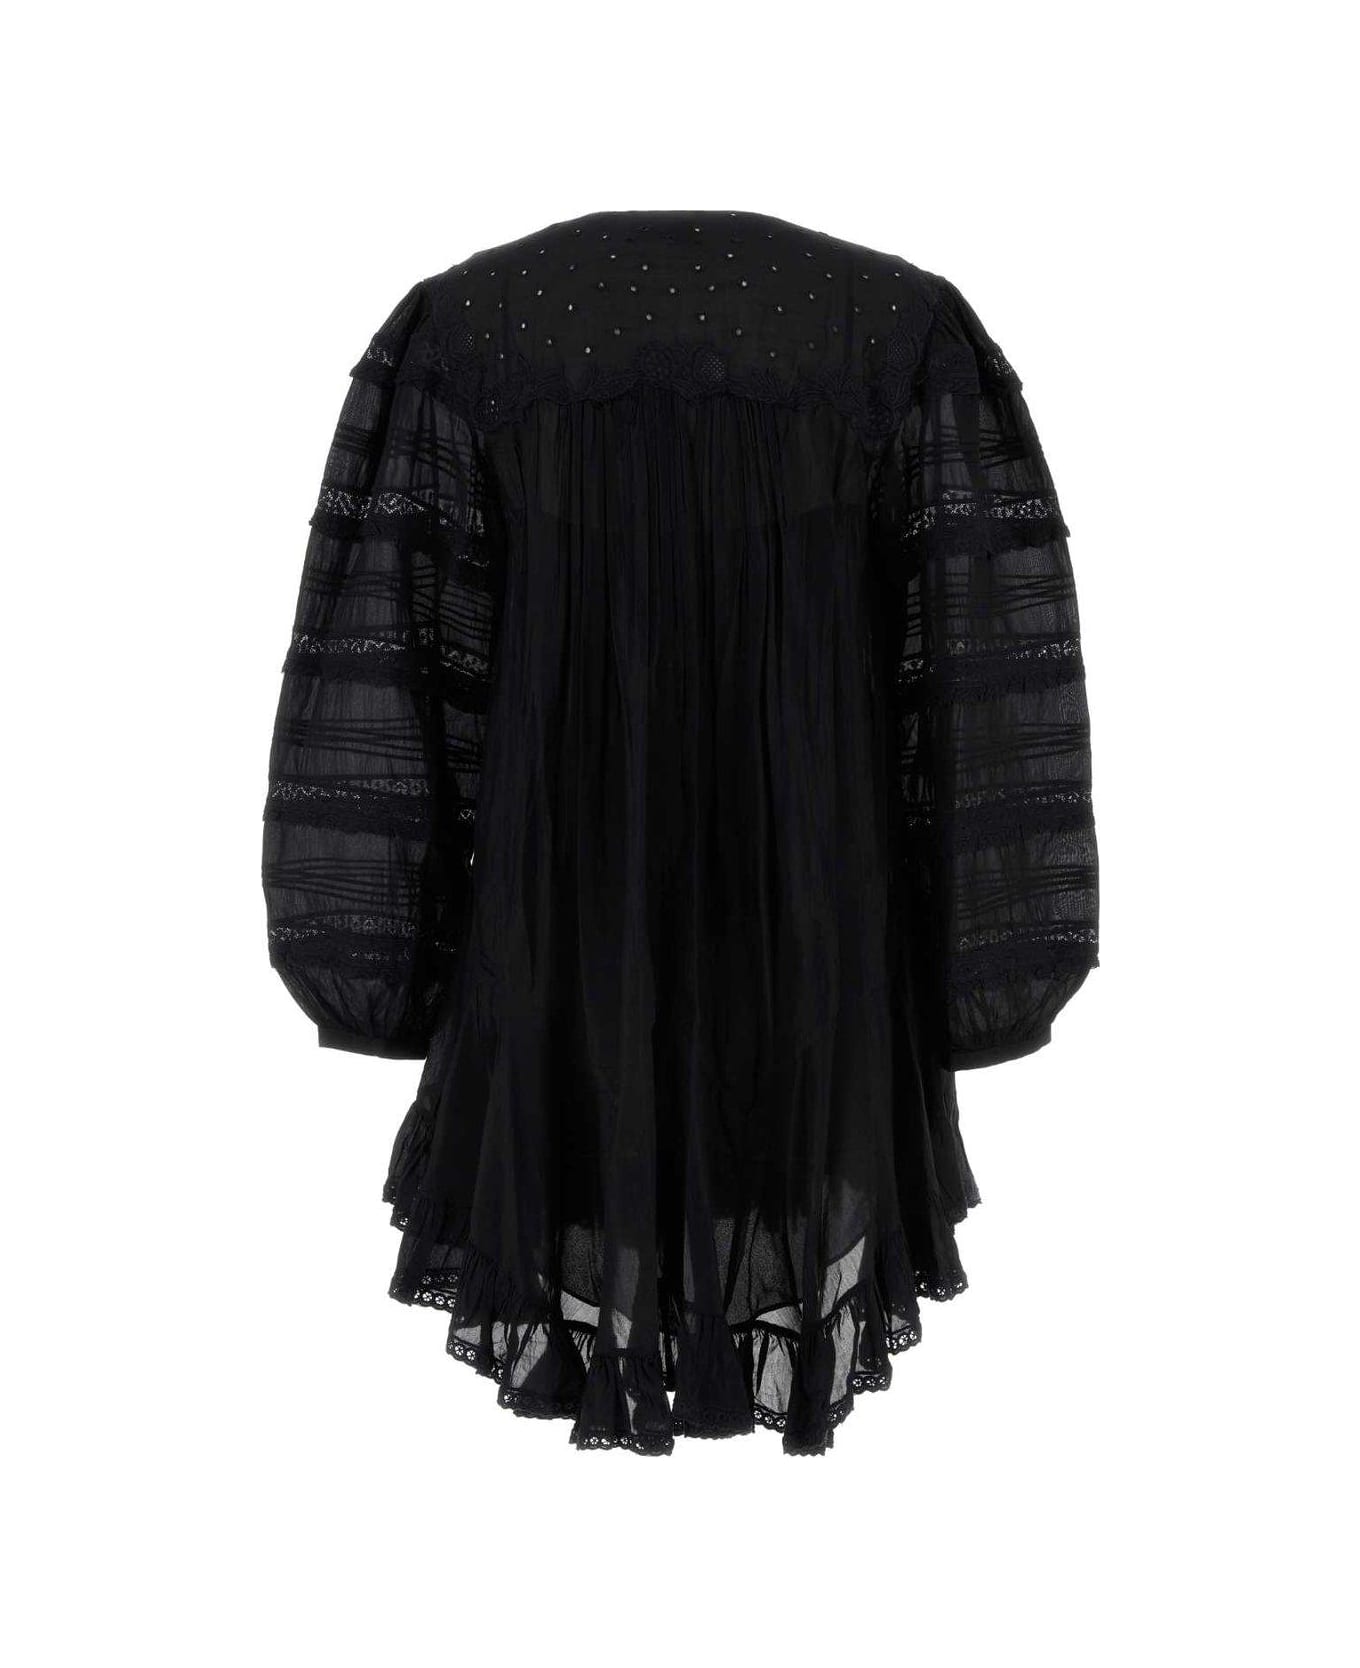 Isabel Marant Gyliane Dress - Black